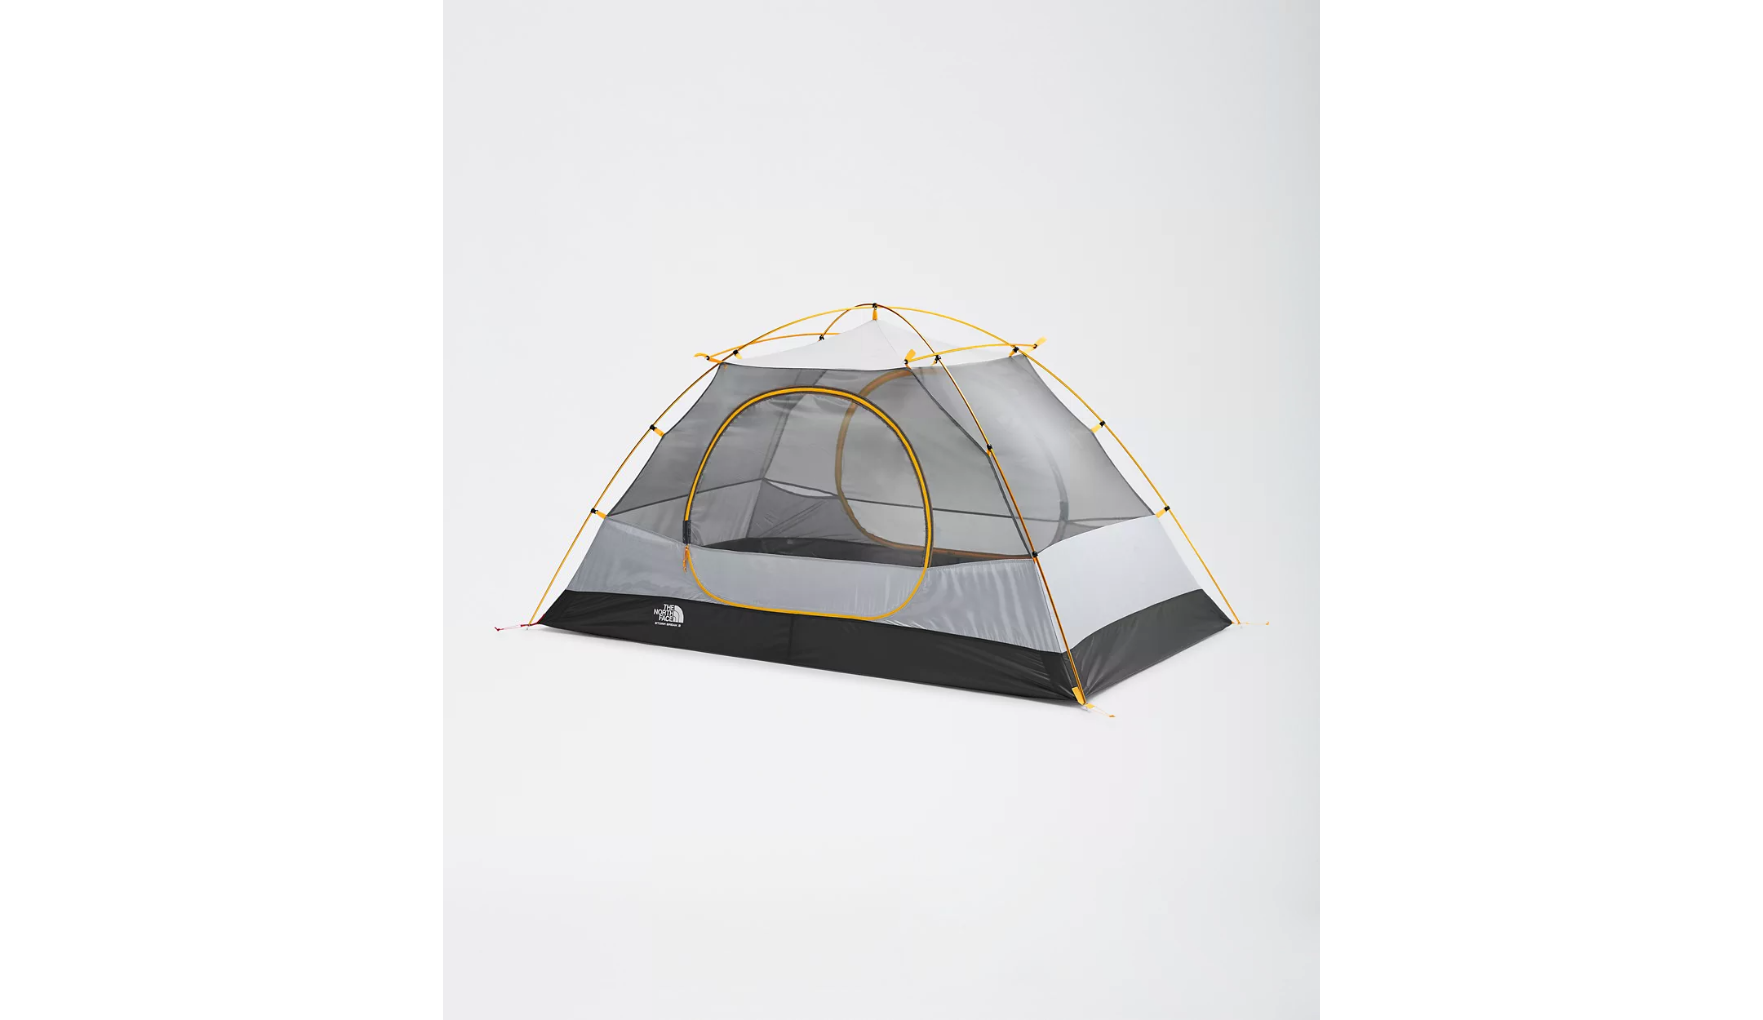 The North Face Stormbreak 2 Tent